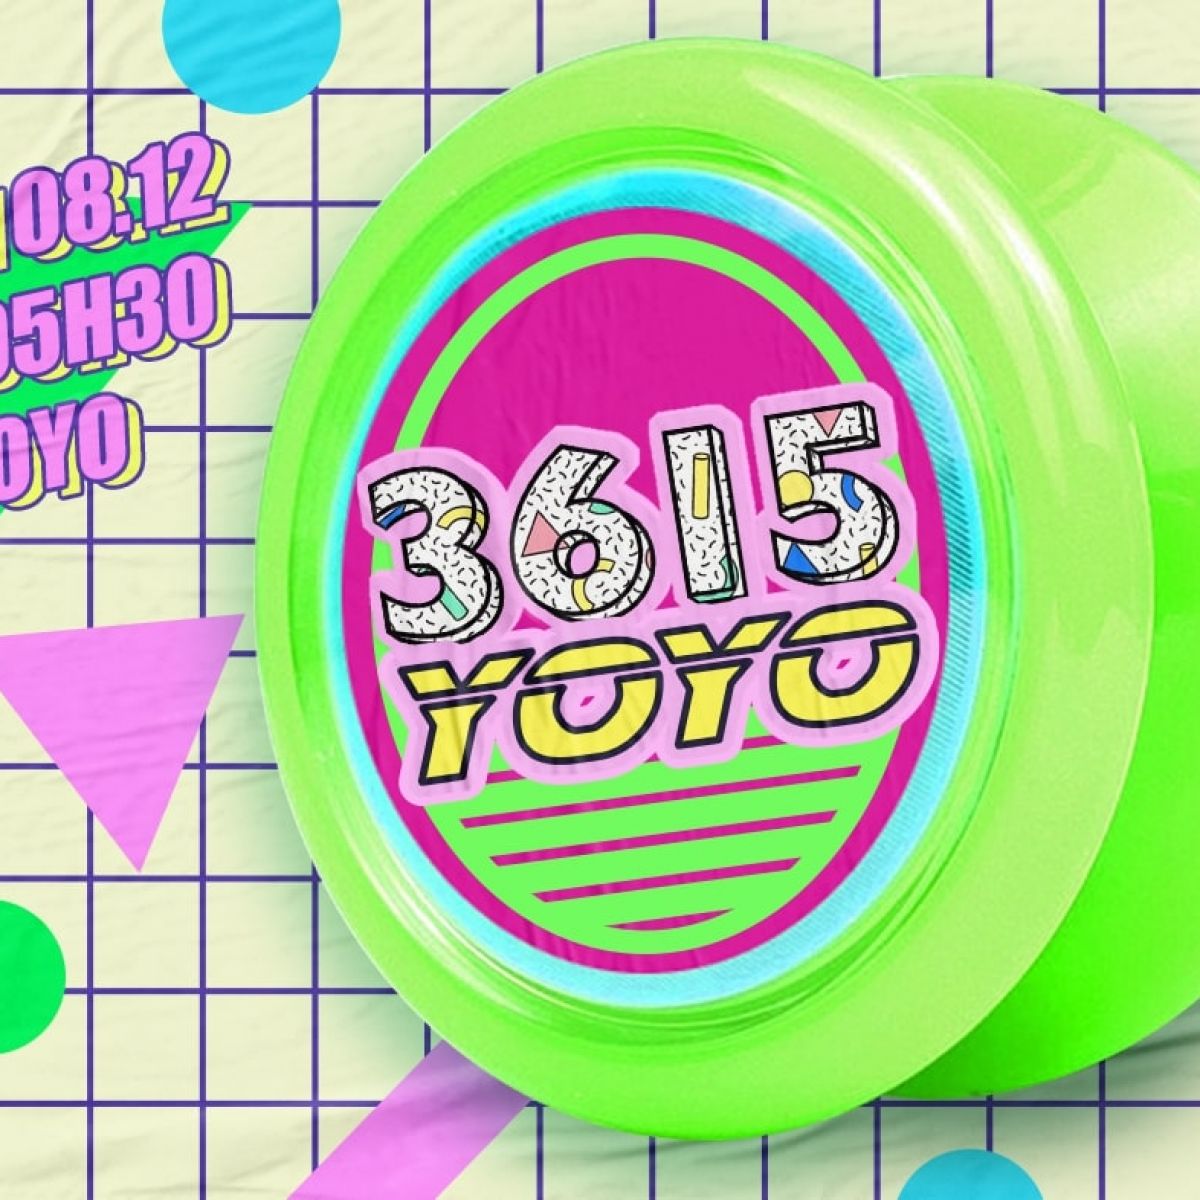 3615 YOYO - Vol. 3